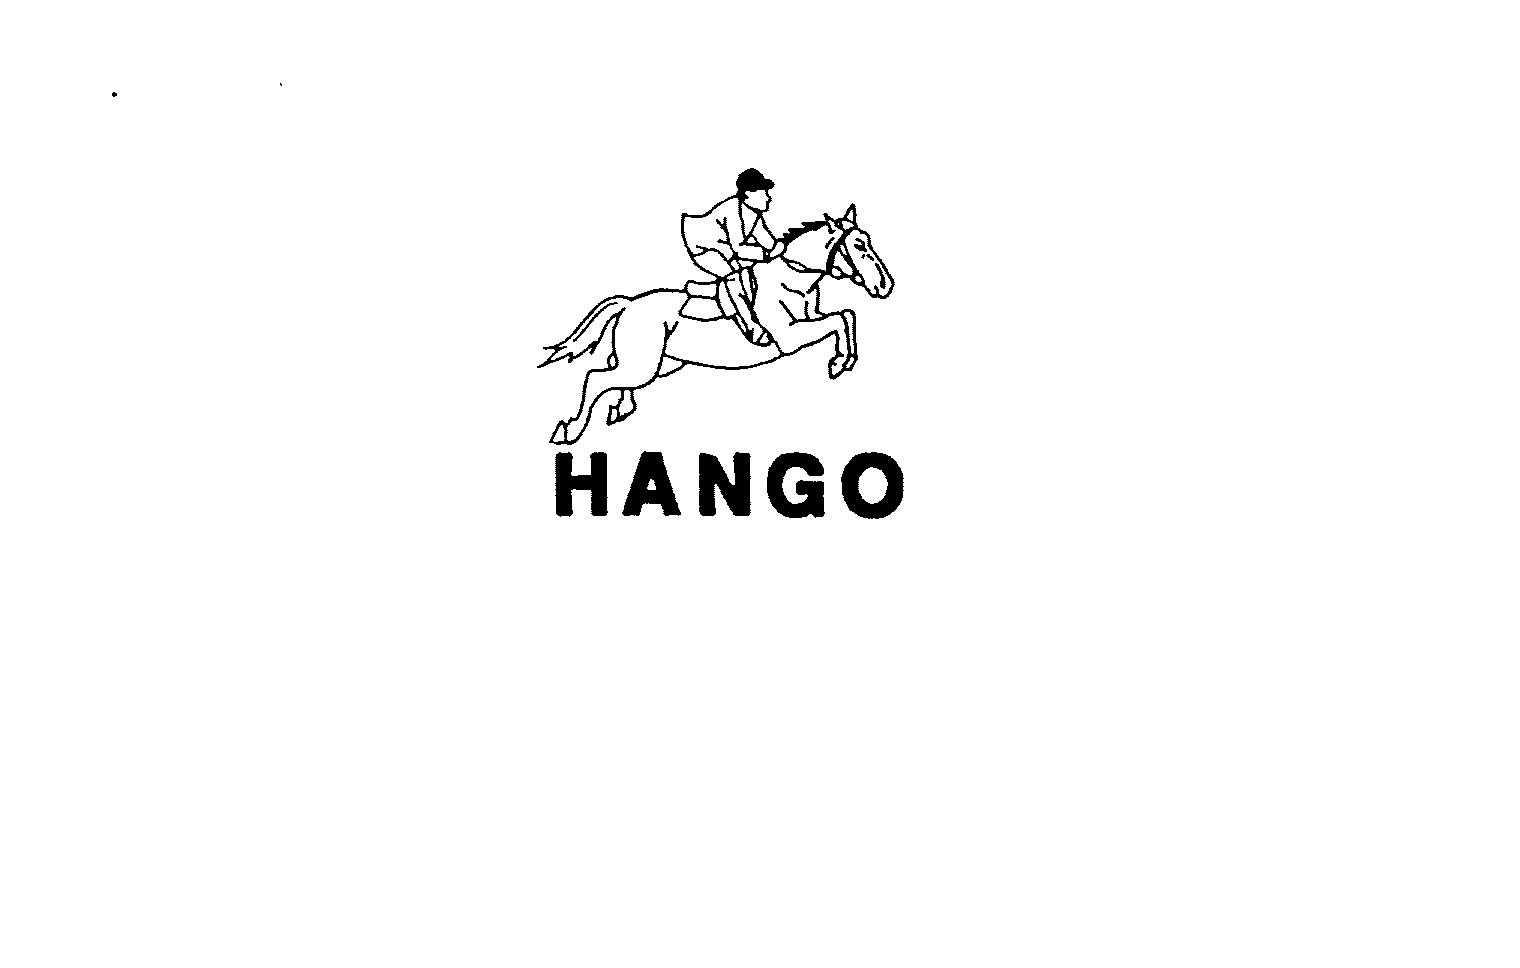 HANGO